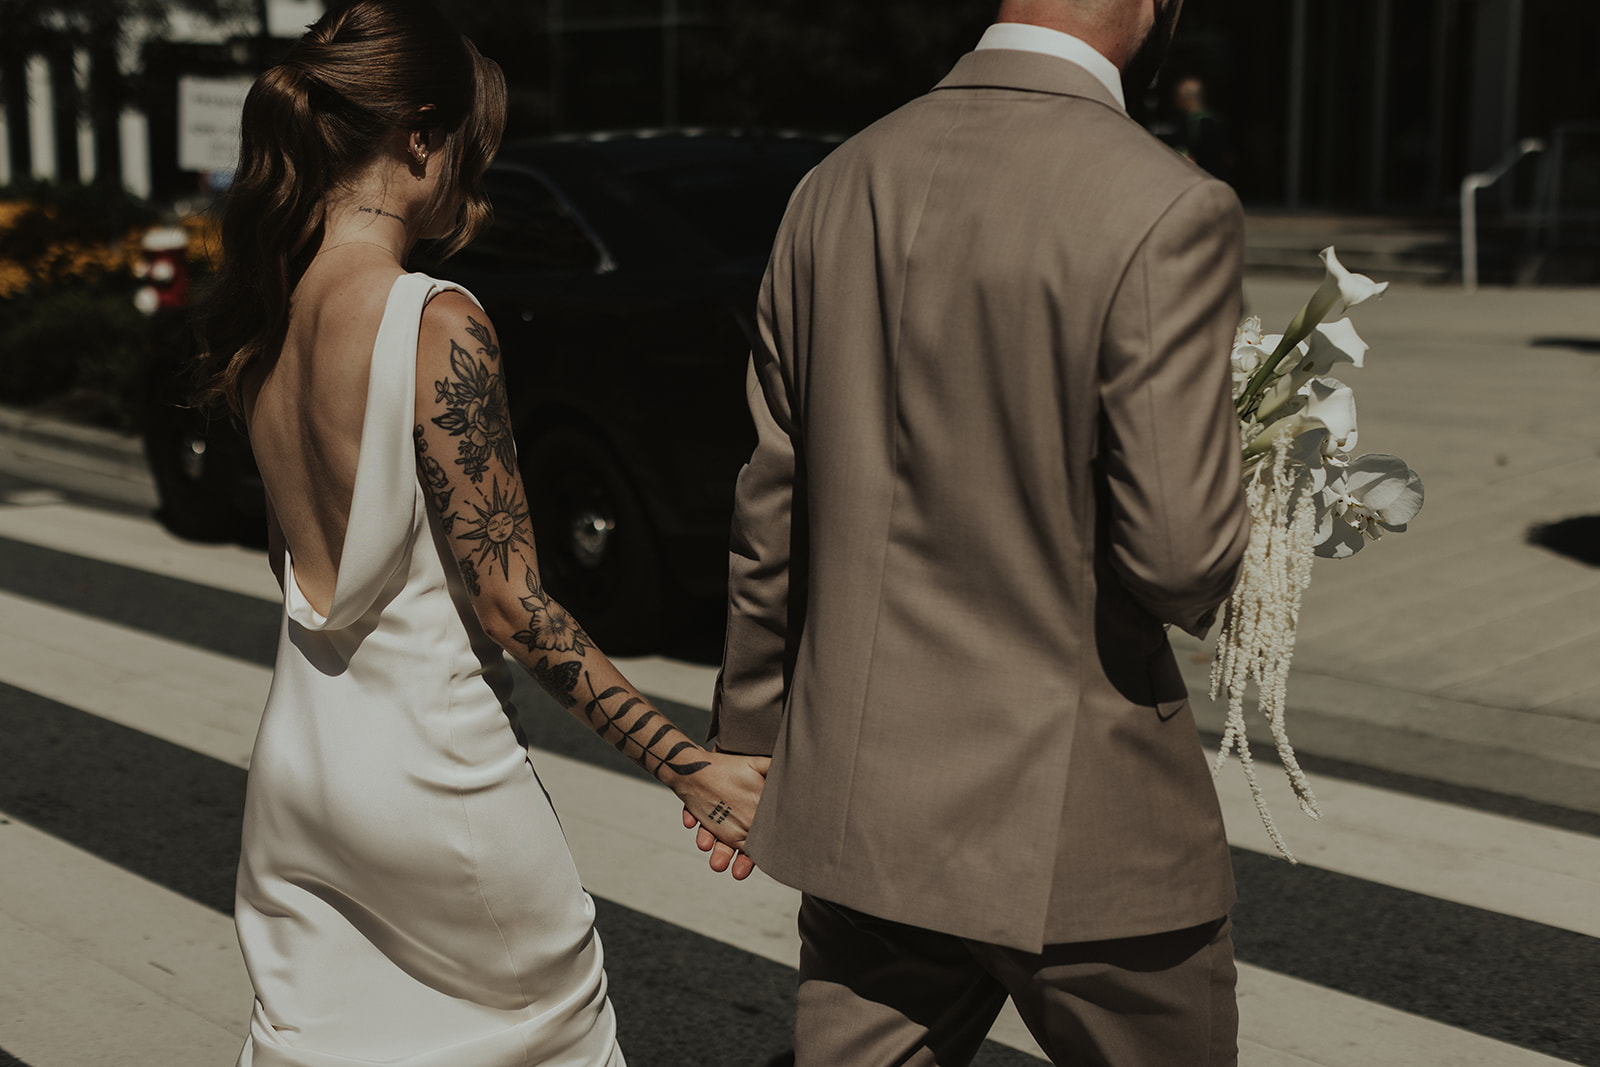 Couple walking holding hands in North Vancouver. Bride wearing sleek satin gown by Savannah Miller. Groom in earthy brown suit.